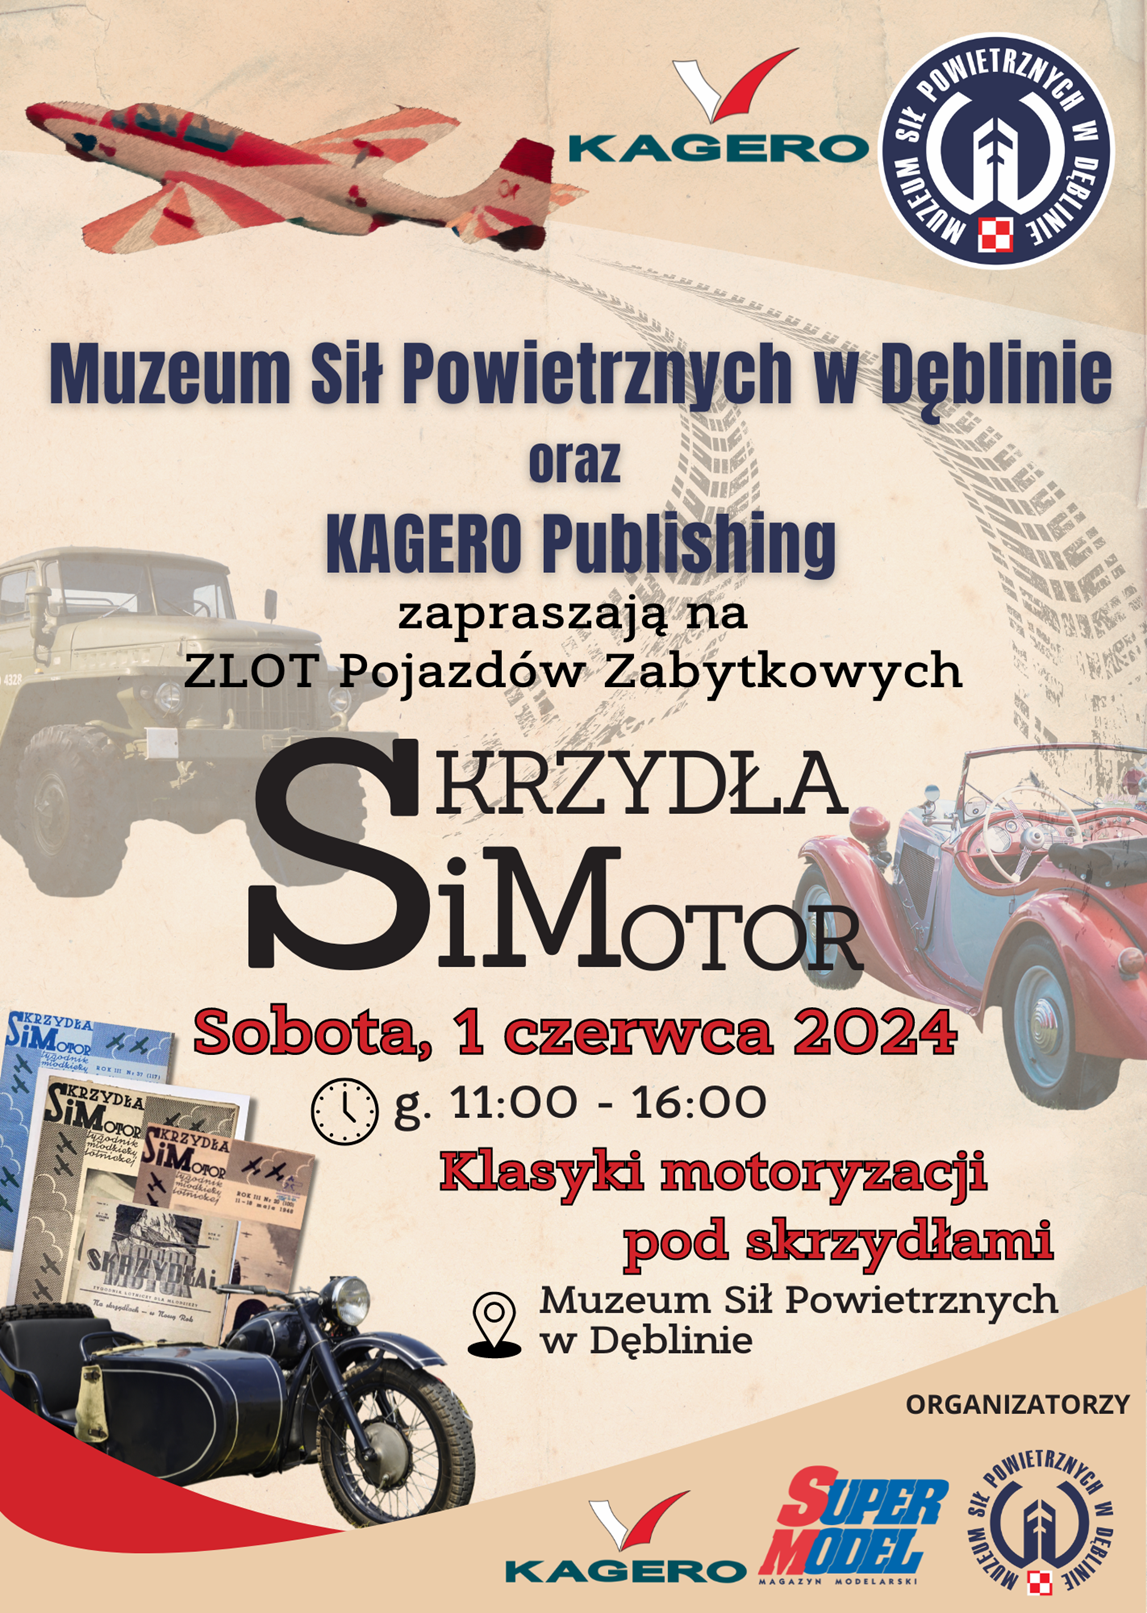 Plakat wydarzenia w muzeum z samolotami i samochodami zatytułowany "Skrzydła i Motor", z informacjami o dacie, miejscu i czasie, z wizerunkami pojazdów historycznych.